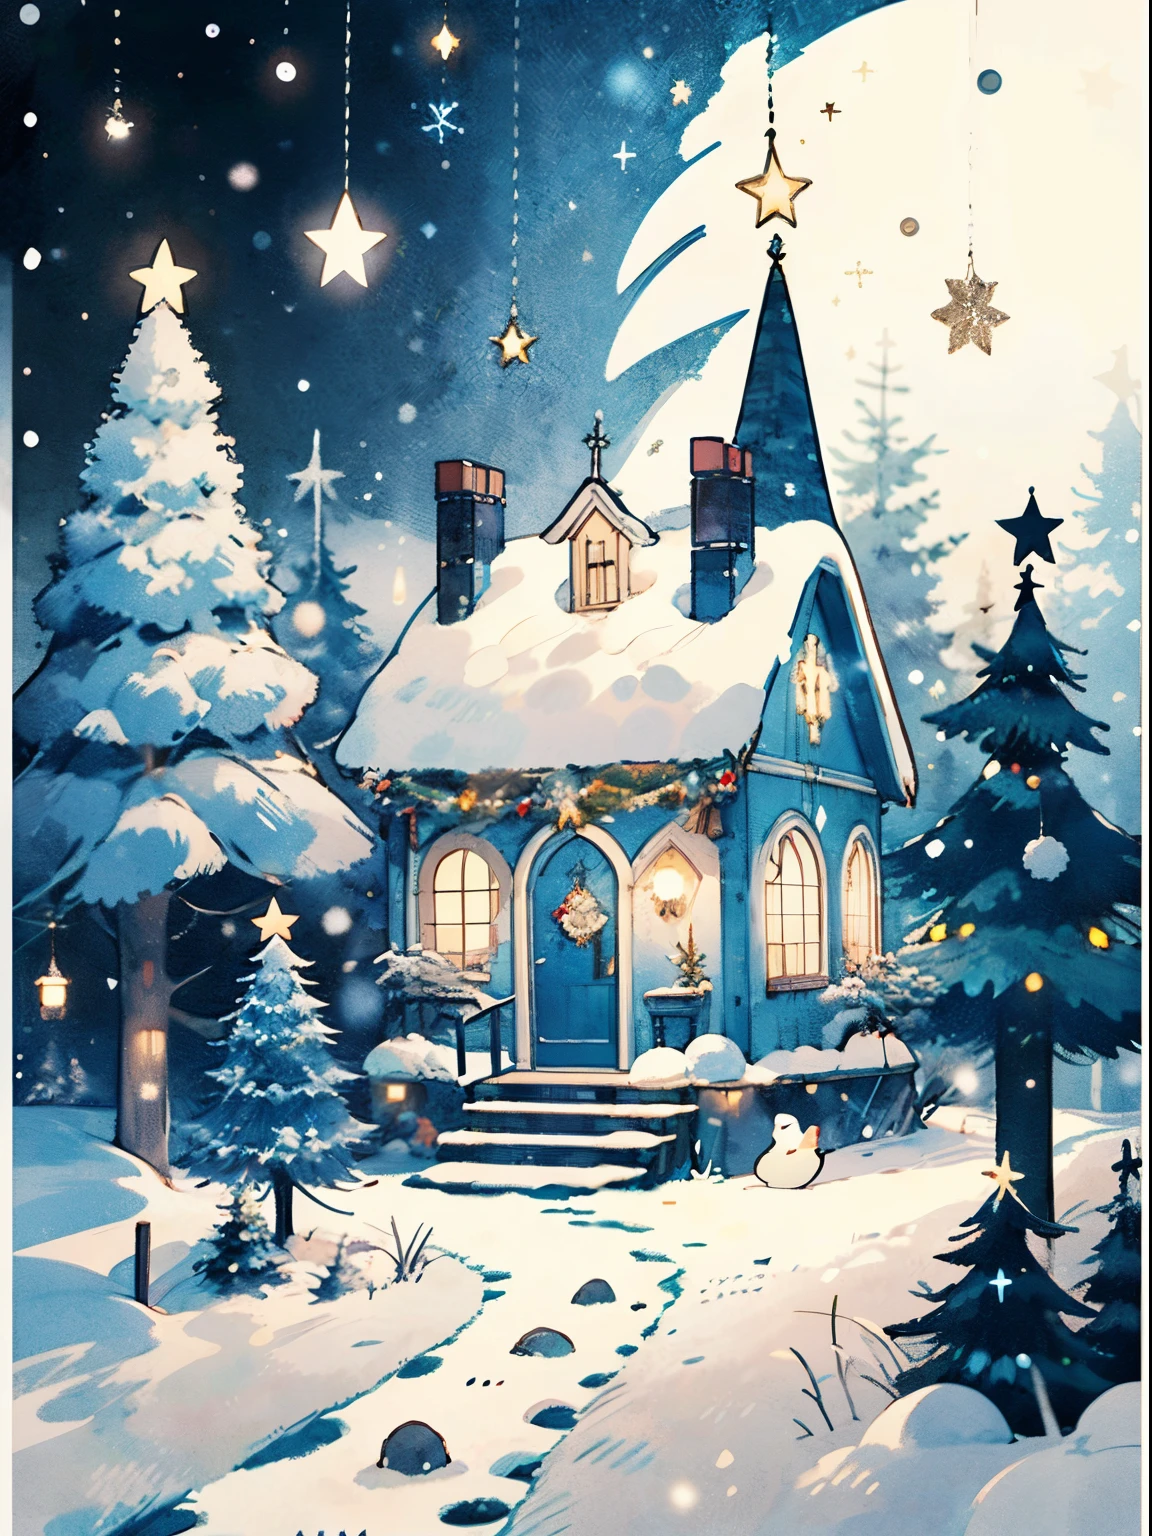 (((傑作))),最好的品質, 懷特敦, 俄羅斯新年, 敬禮 , 色泽鲜艳, 下雪, 圣诞树, balls on the 圣诞树, 樹林裡的小屋, 除夕